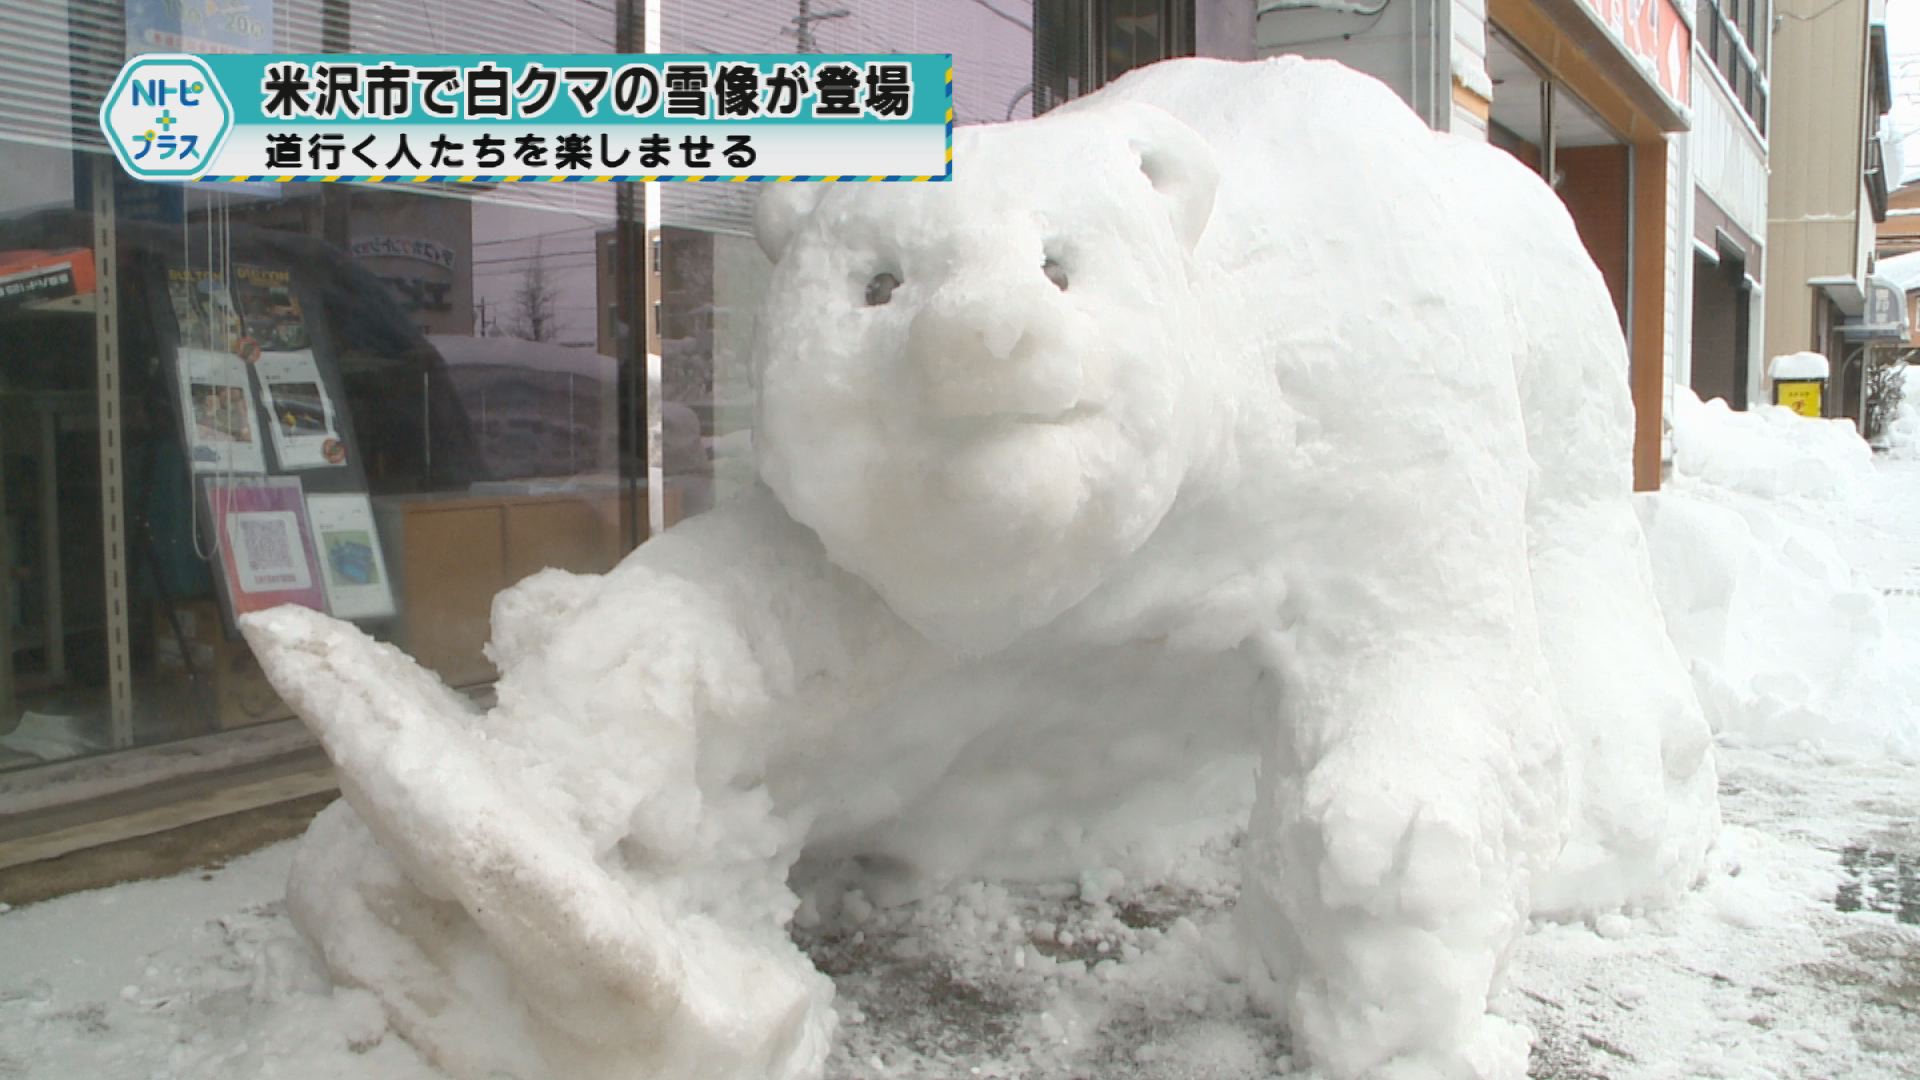 「米沢市で白クマの雪像が登場」道行く人たちを楽しませる